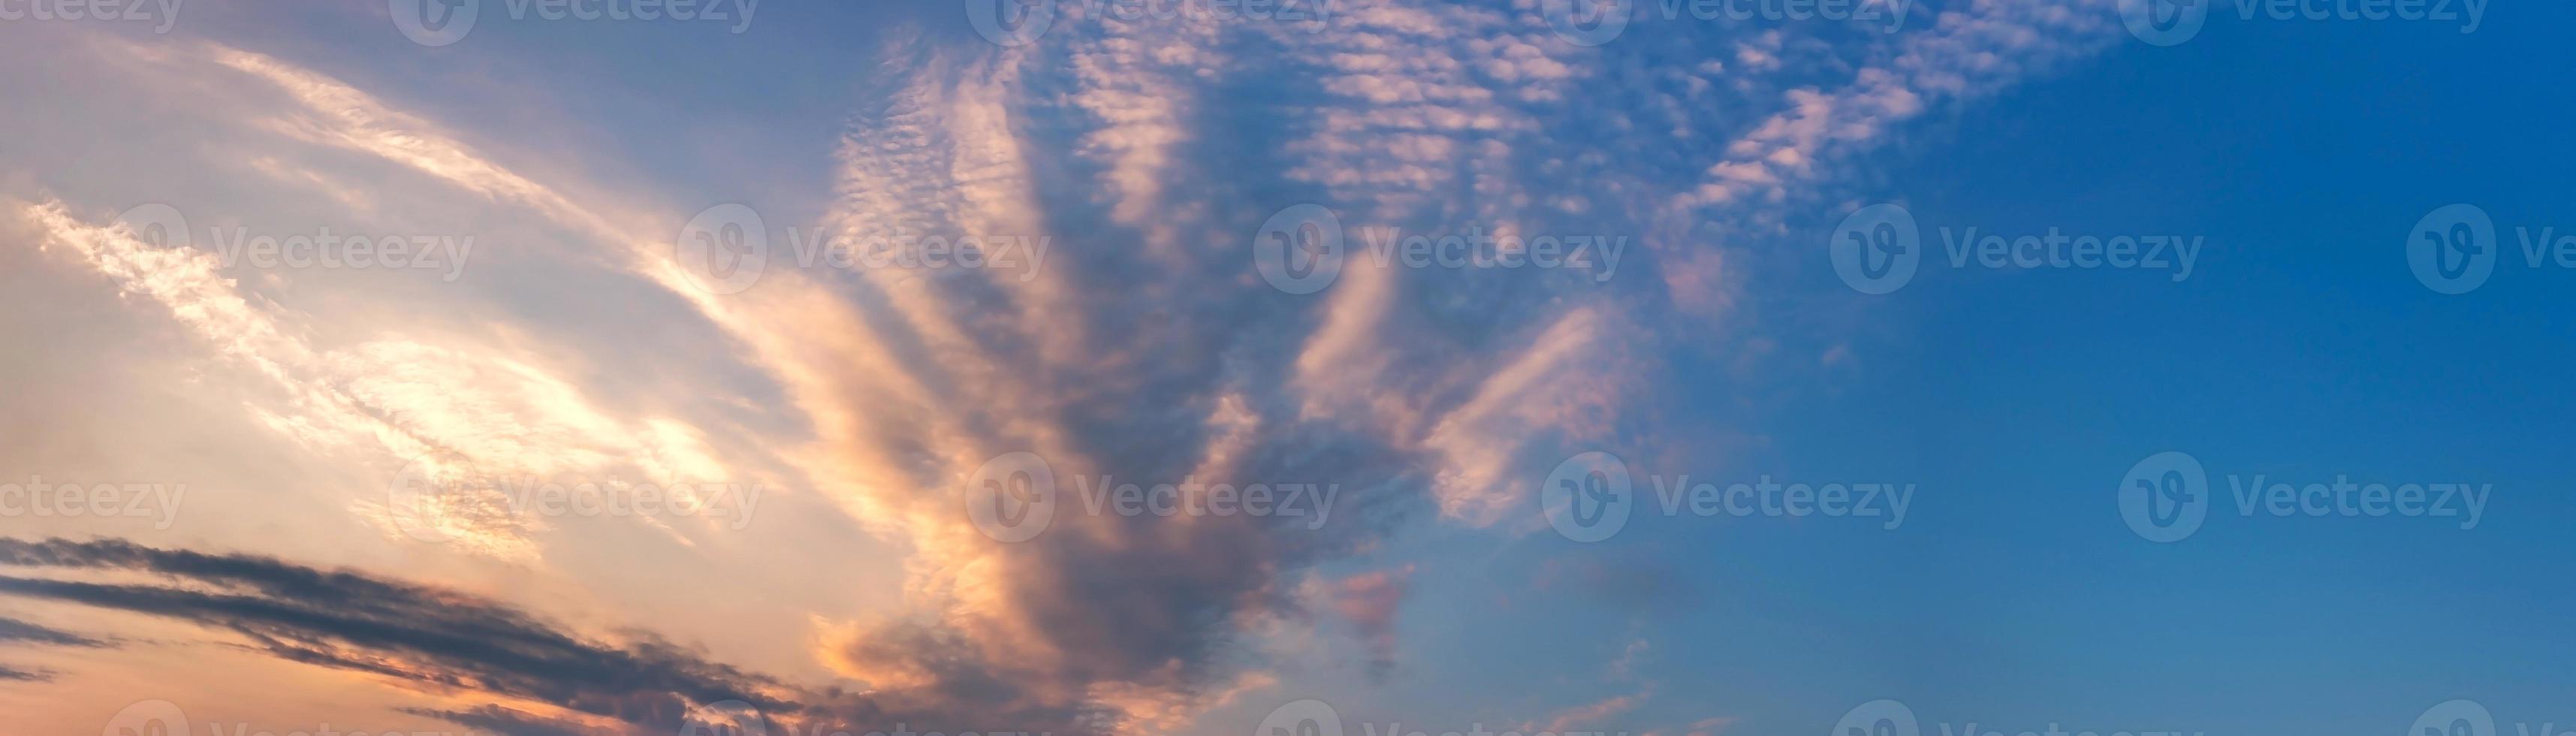 ciel panoramique dramatique avec des nuages au lever et au coucher du soleil photo